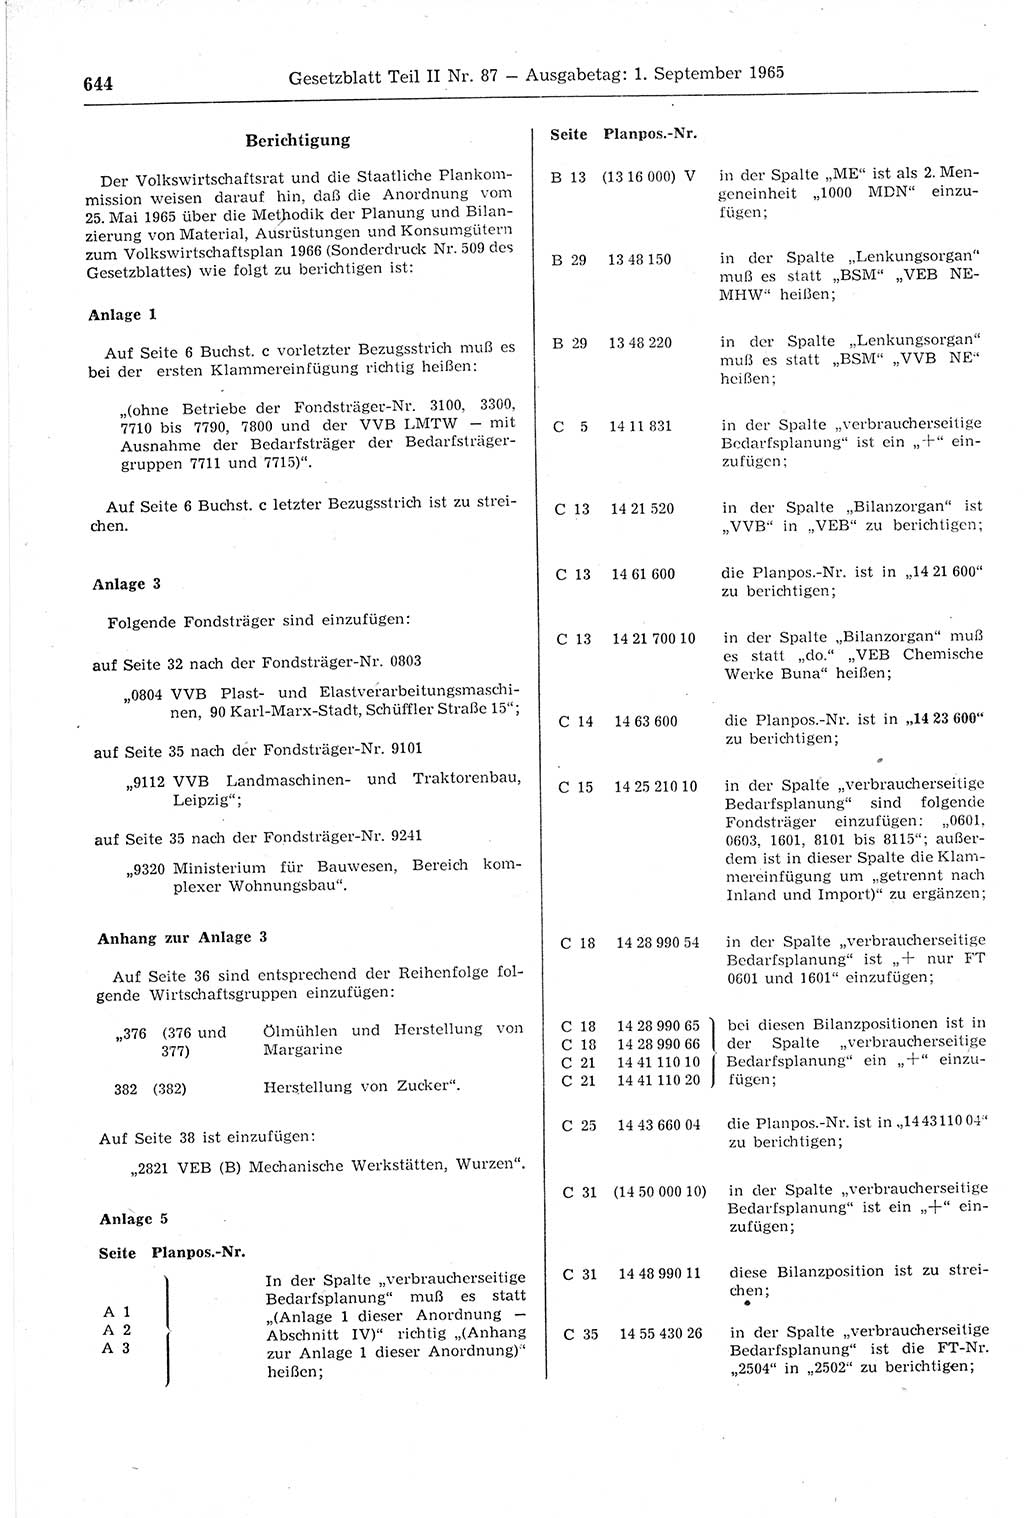 Gesetzblatt (GBl.) der Deutschen Demokratischen Republik (DDR) Teil ⅠⅠ 1965, Seite 644 (GBl. DDR ⅠⅠ 1965, S. 644)